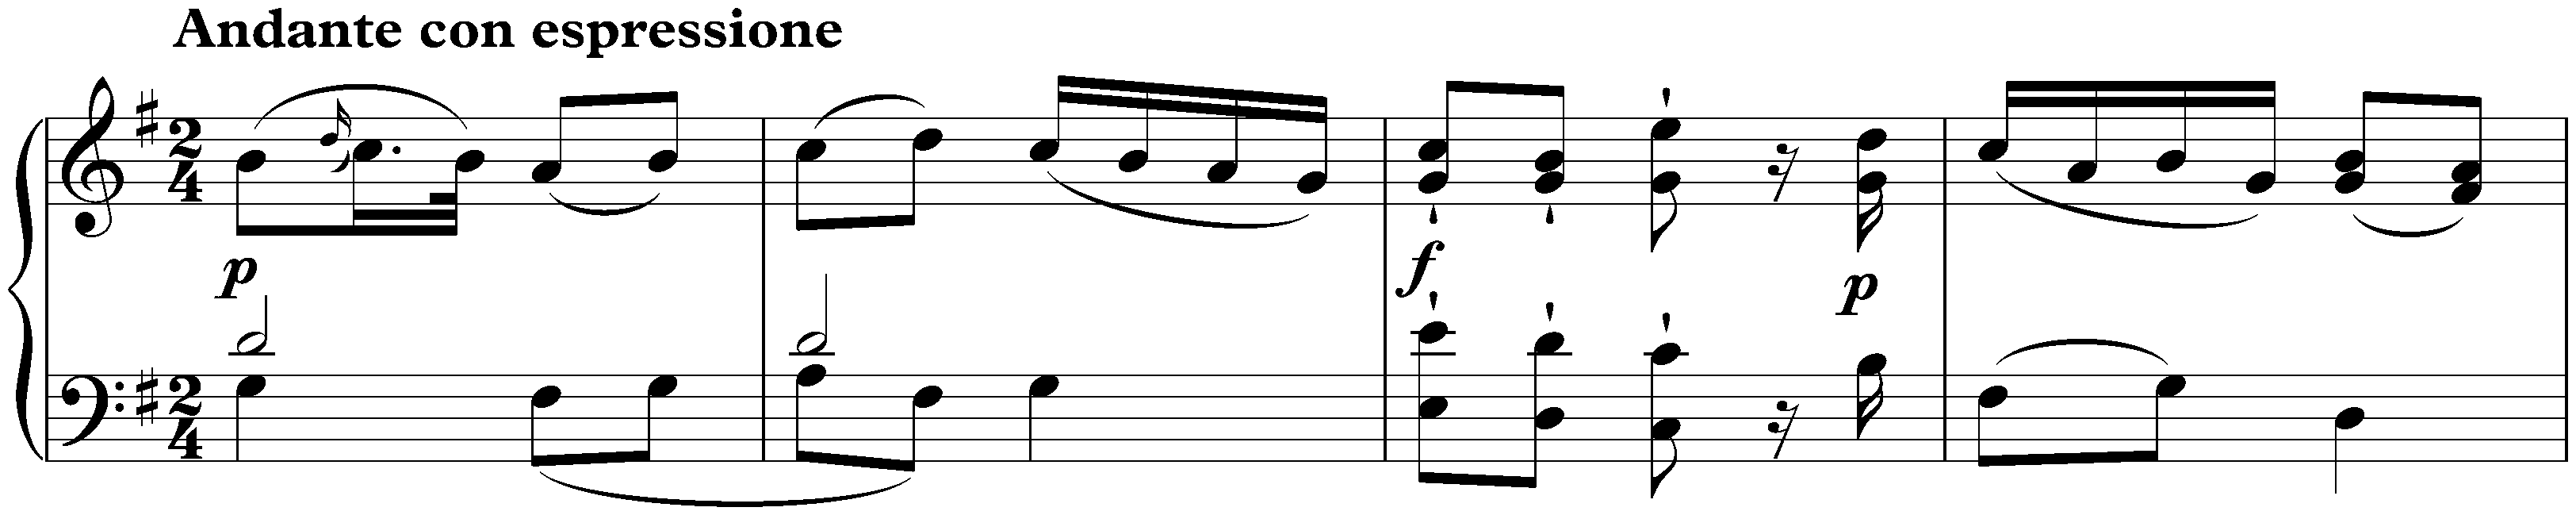 Sonata in D major, KV 311/284c; 2. Andante con espressione